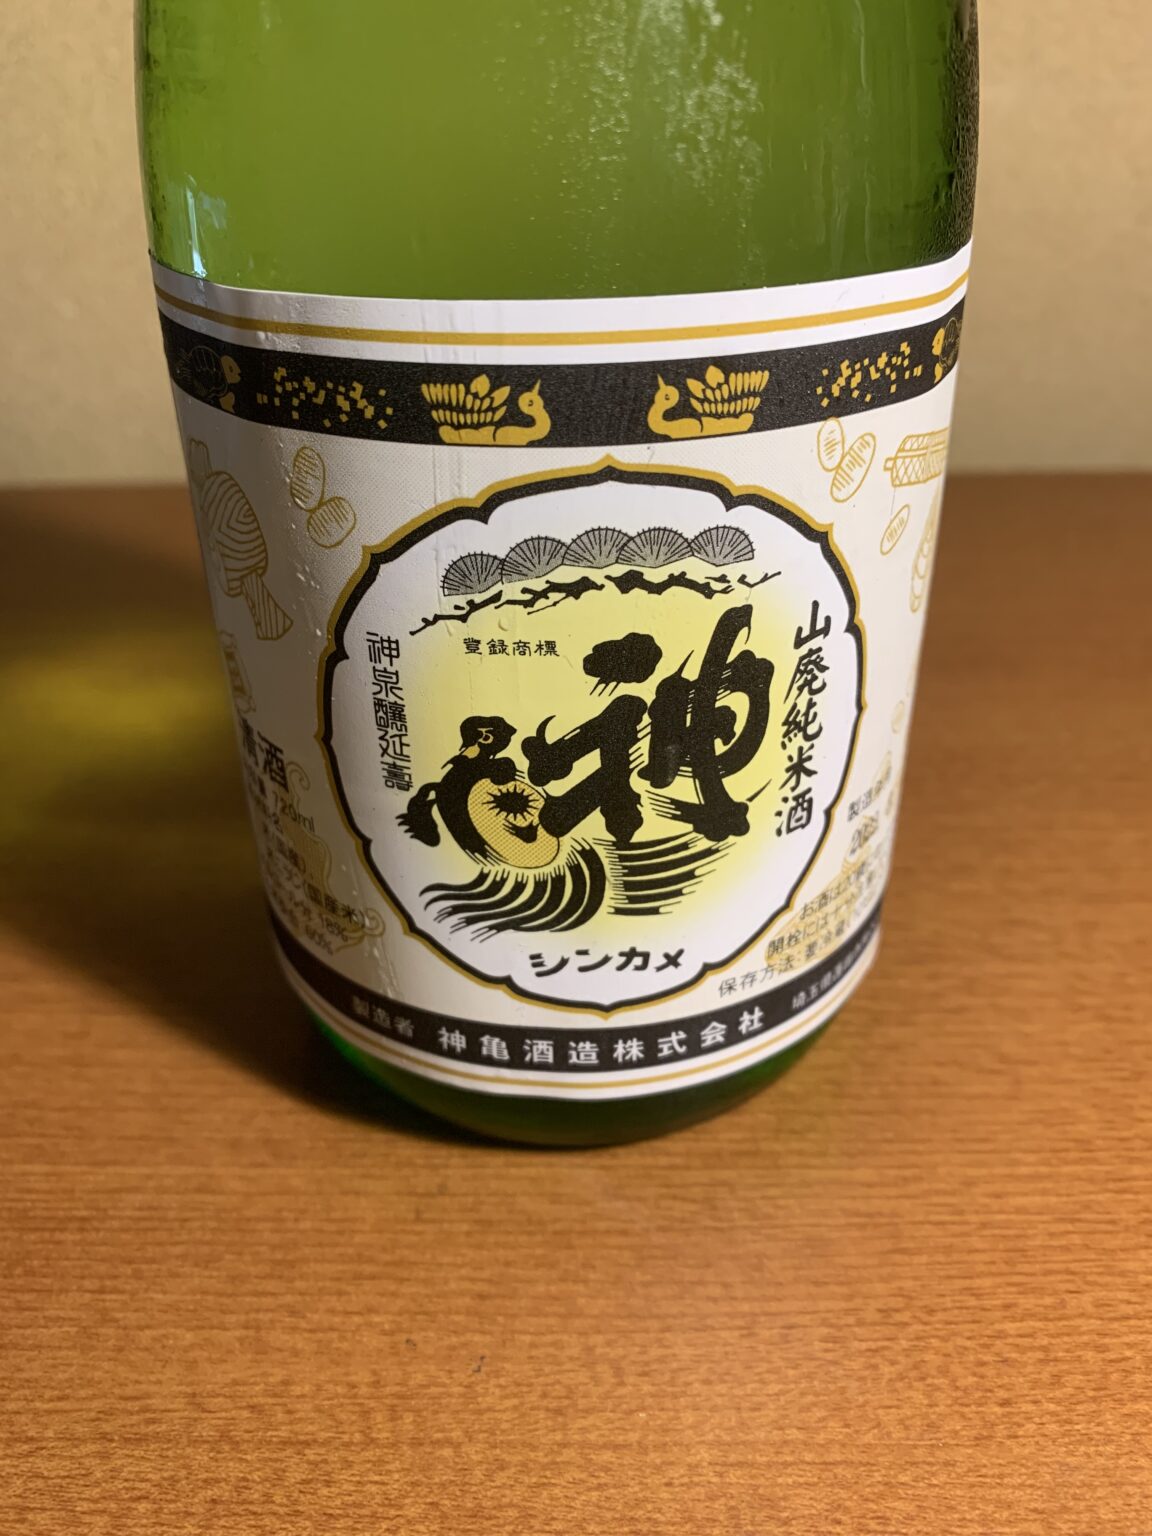 埼玉の日本酒『神亀 山廃純米酒生』は風味豊かでキレ良い味わい